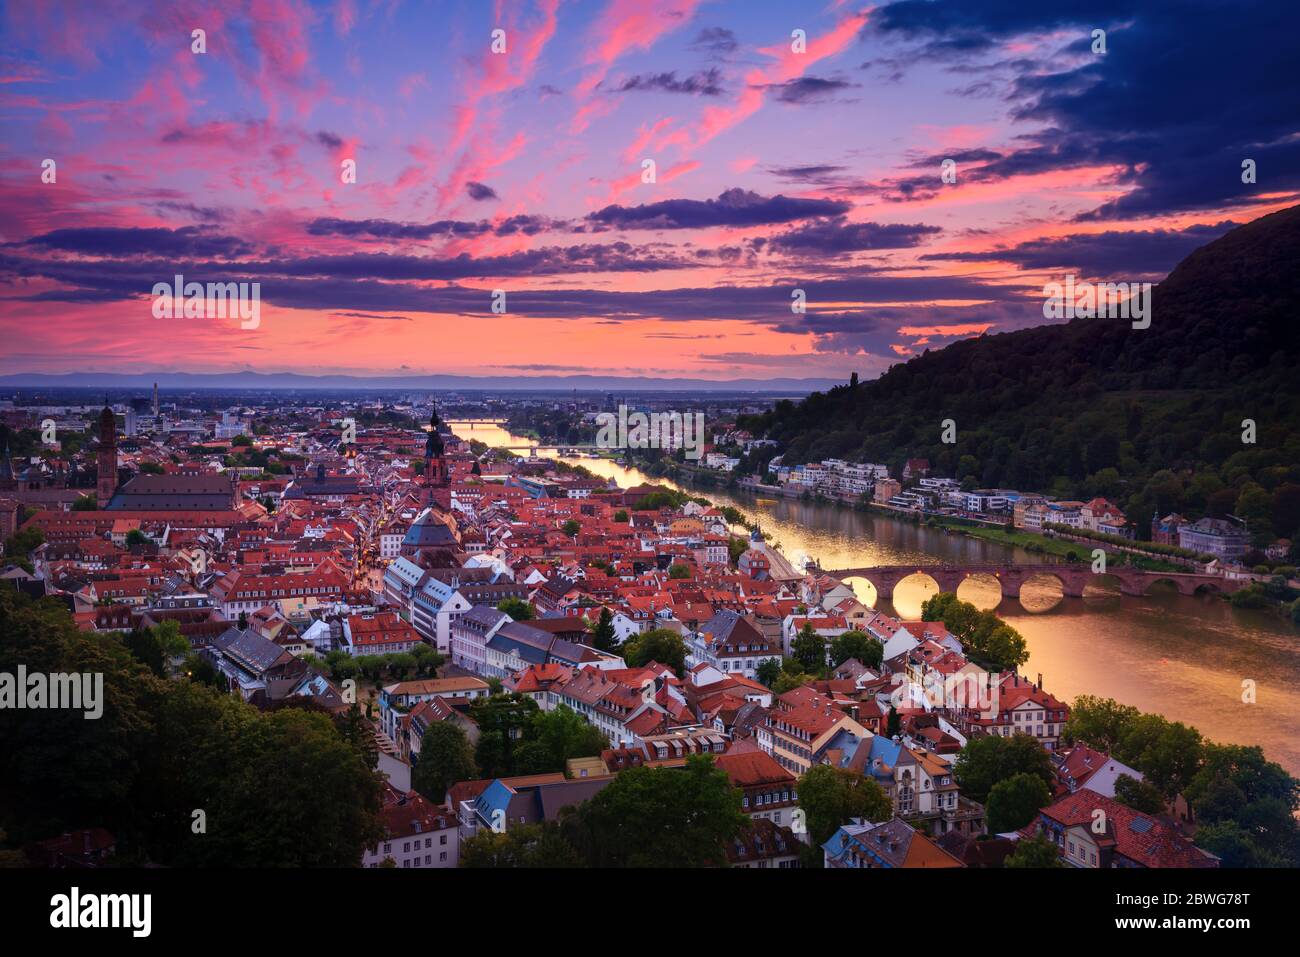 Romantica vista aerea di Heidelberg con il fiume Neckar, in Germania, un suggestivo bagliore con vivaci colori rosso e viola dopo il tramonto Foto Stock